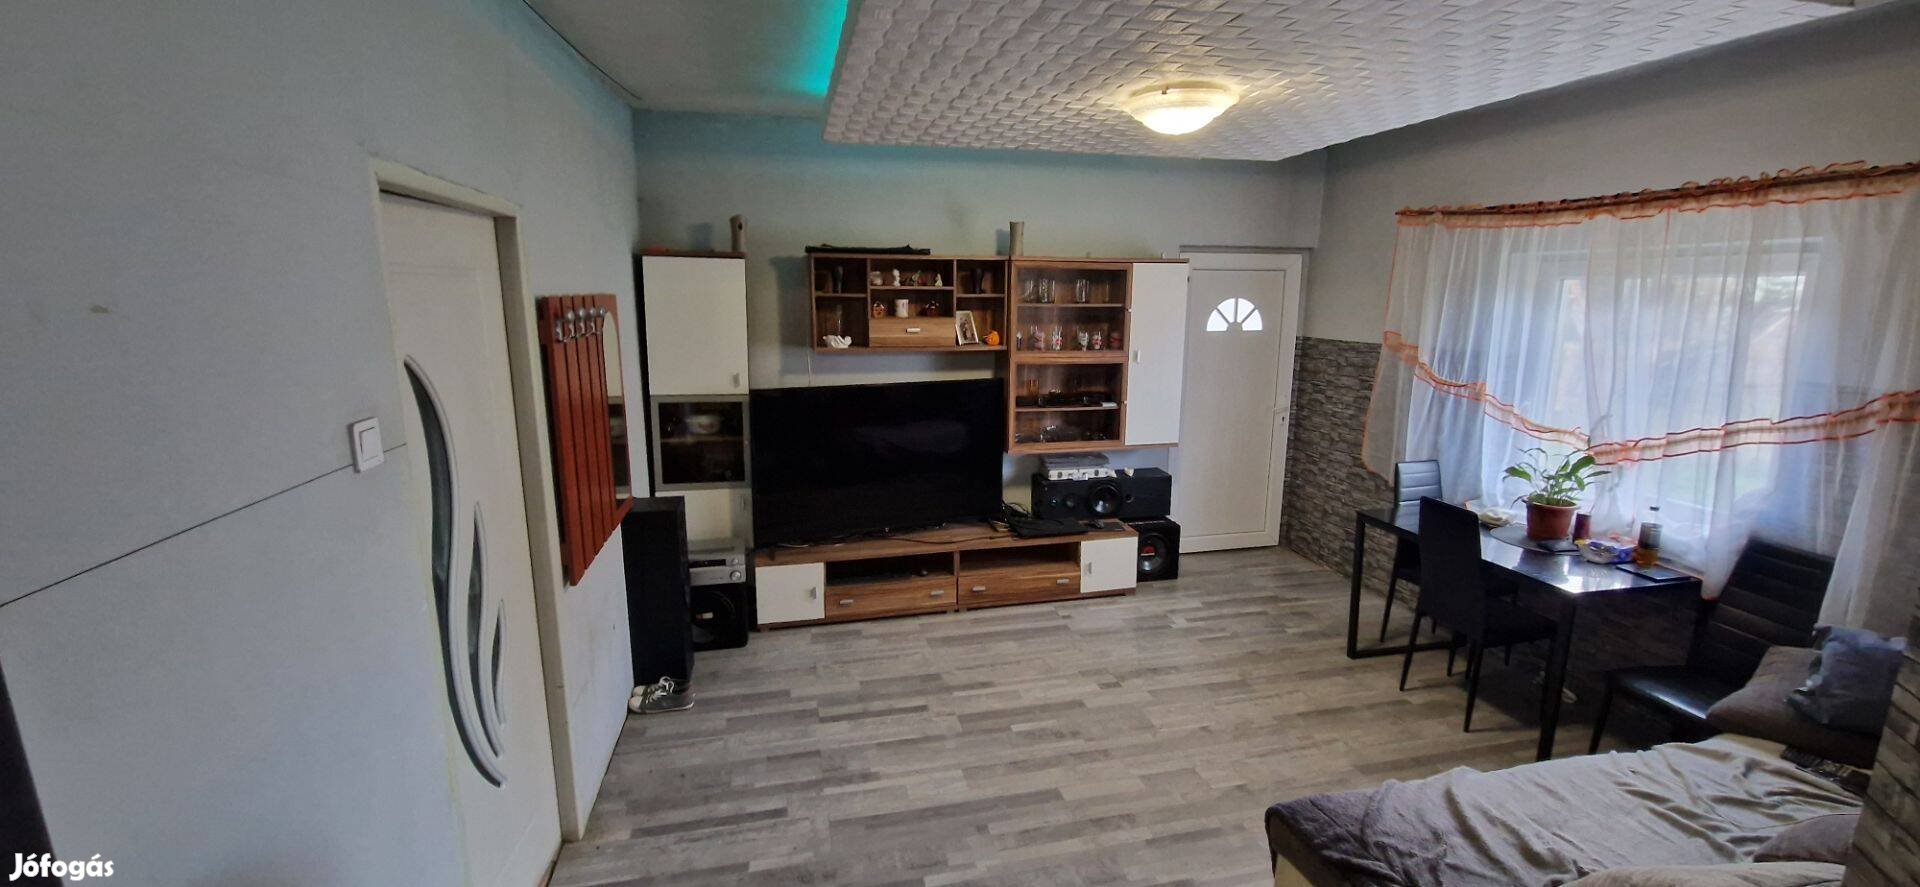 Nyírvasváriban azonnal költözhető családi ház eladó